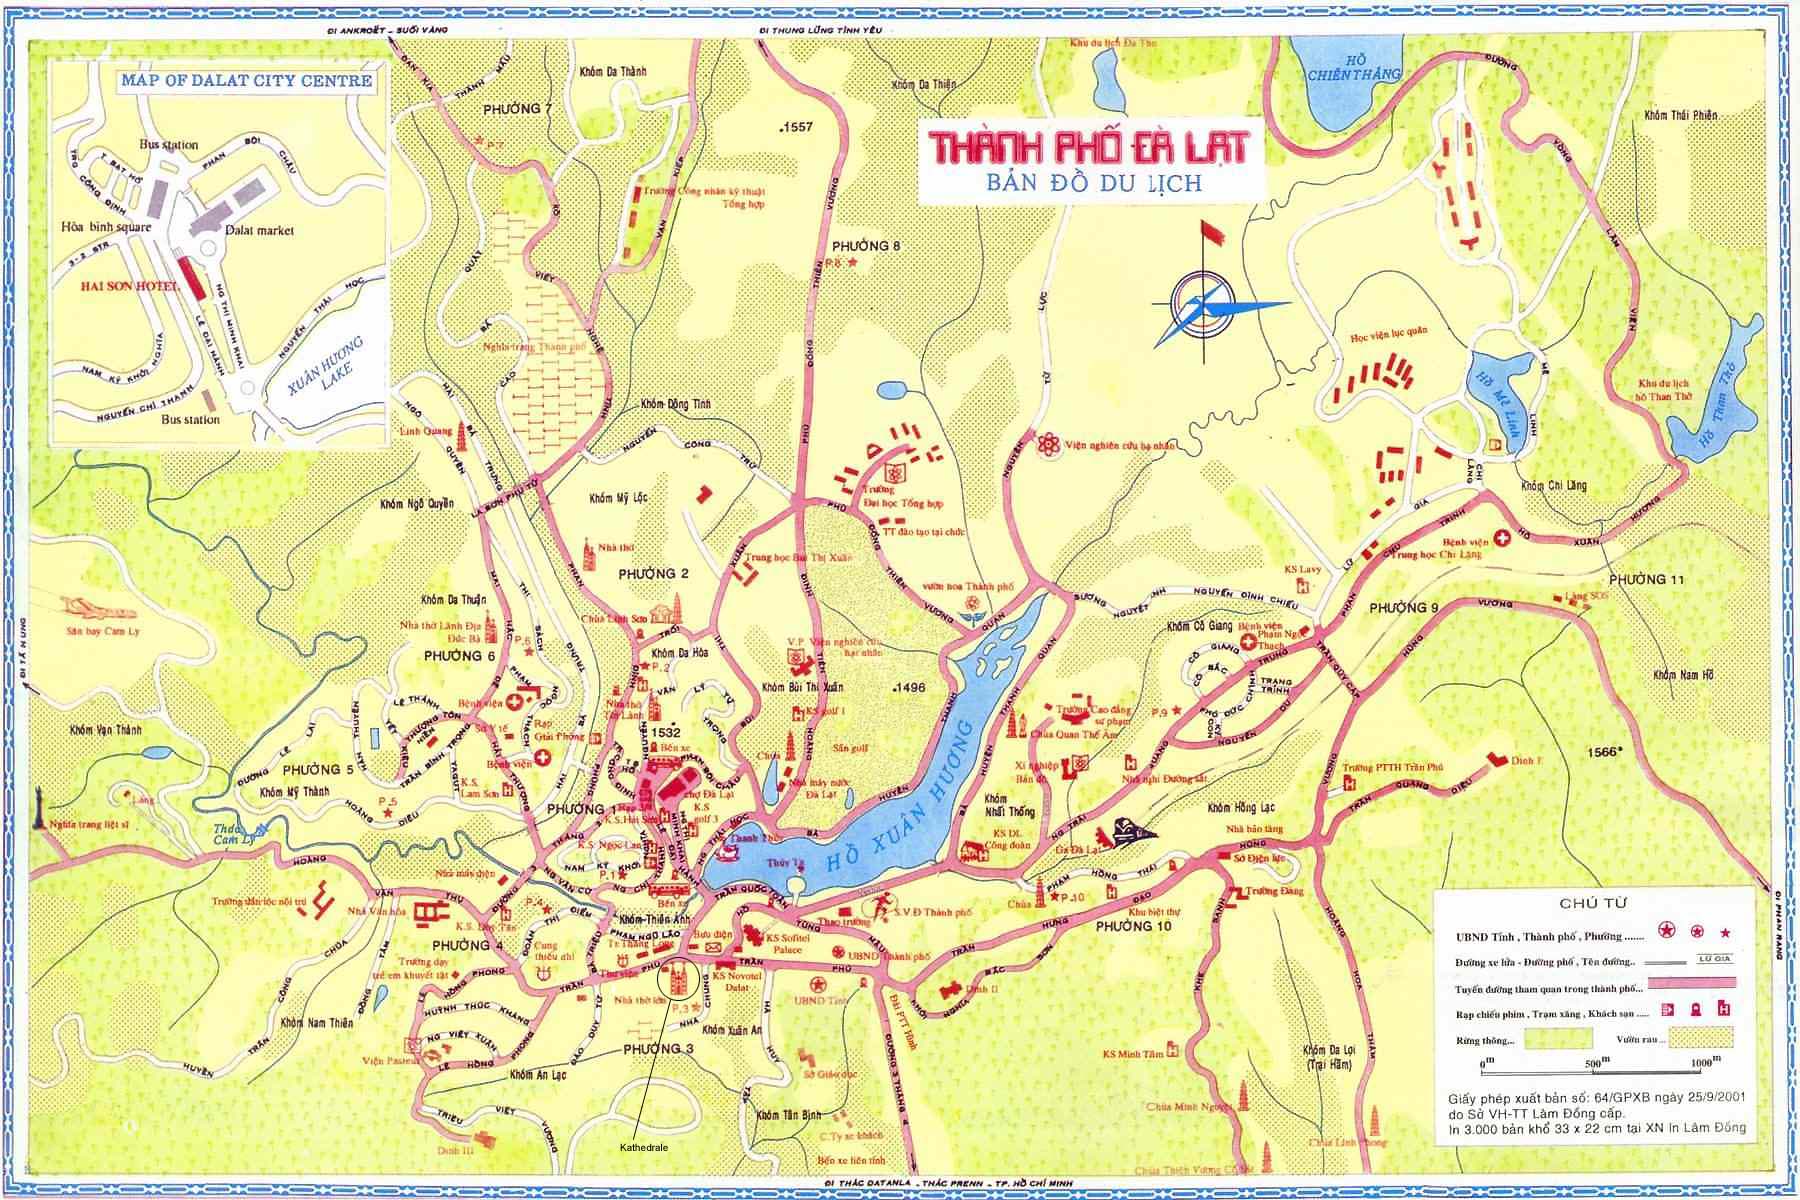 Để thuận tiện cho kế hoạch chuyến đi của mình, việc xác định địa điểm trên bản đồ hành chính là rất quan trọng. Những bản đồ hành chính mới nhất của Việt Nam sẽ giúp bạn điều hướng chuyến đi của mình một cách dễ dàng hơn.